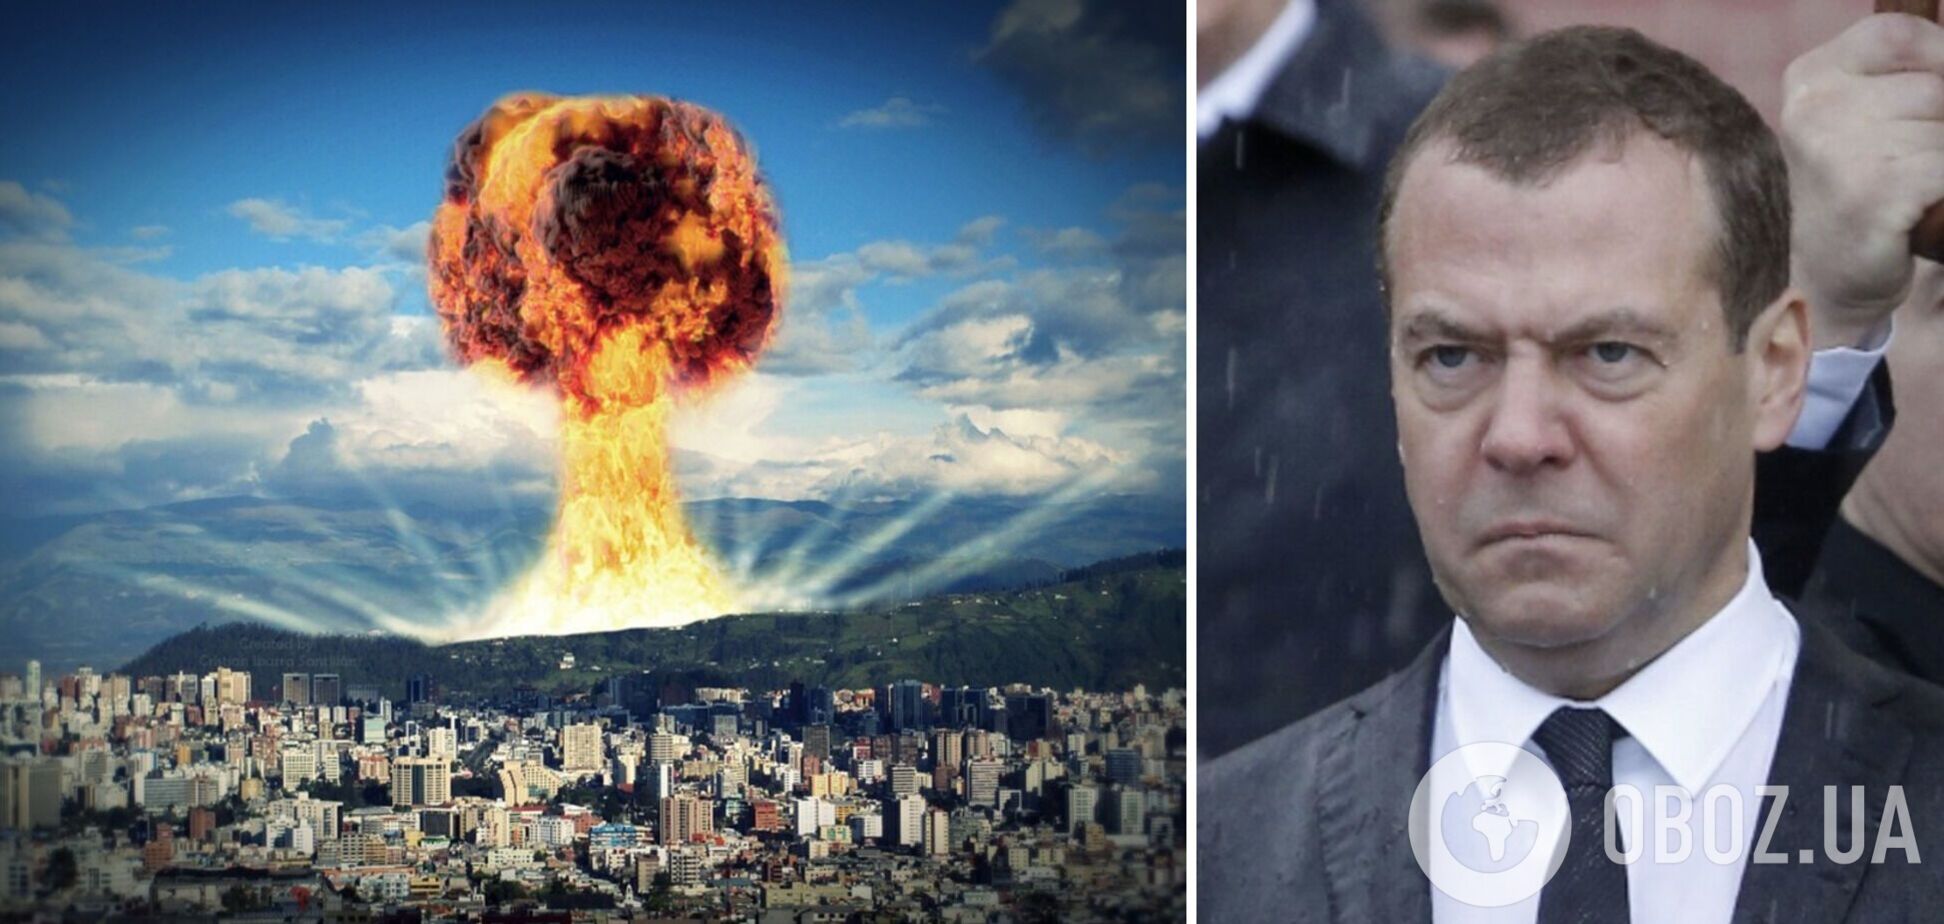 Медведев снова попытался 'обосновать' войну против Украины и заговорил об 'повелителе ада', которого надо остановить